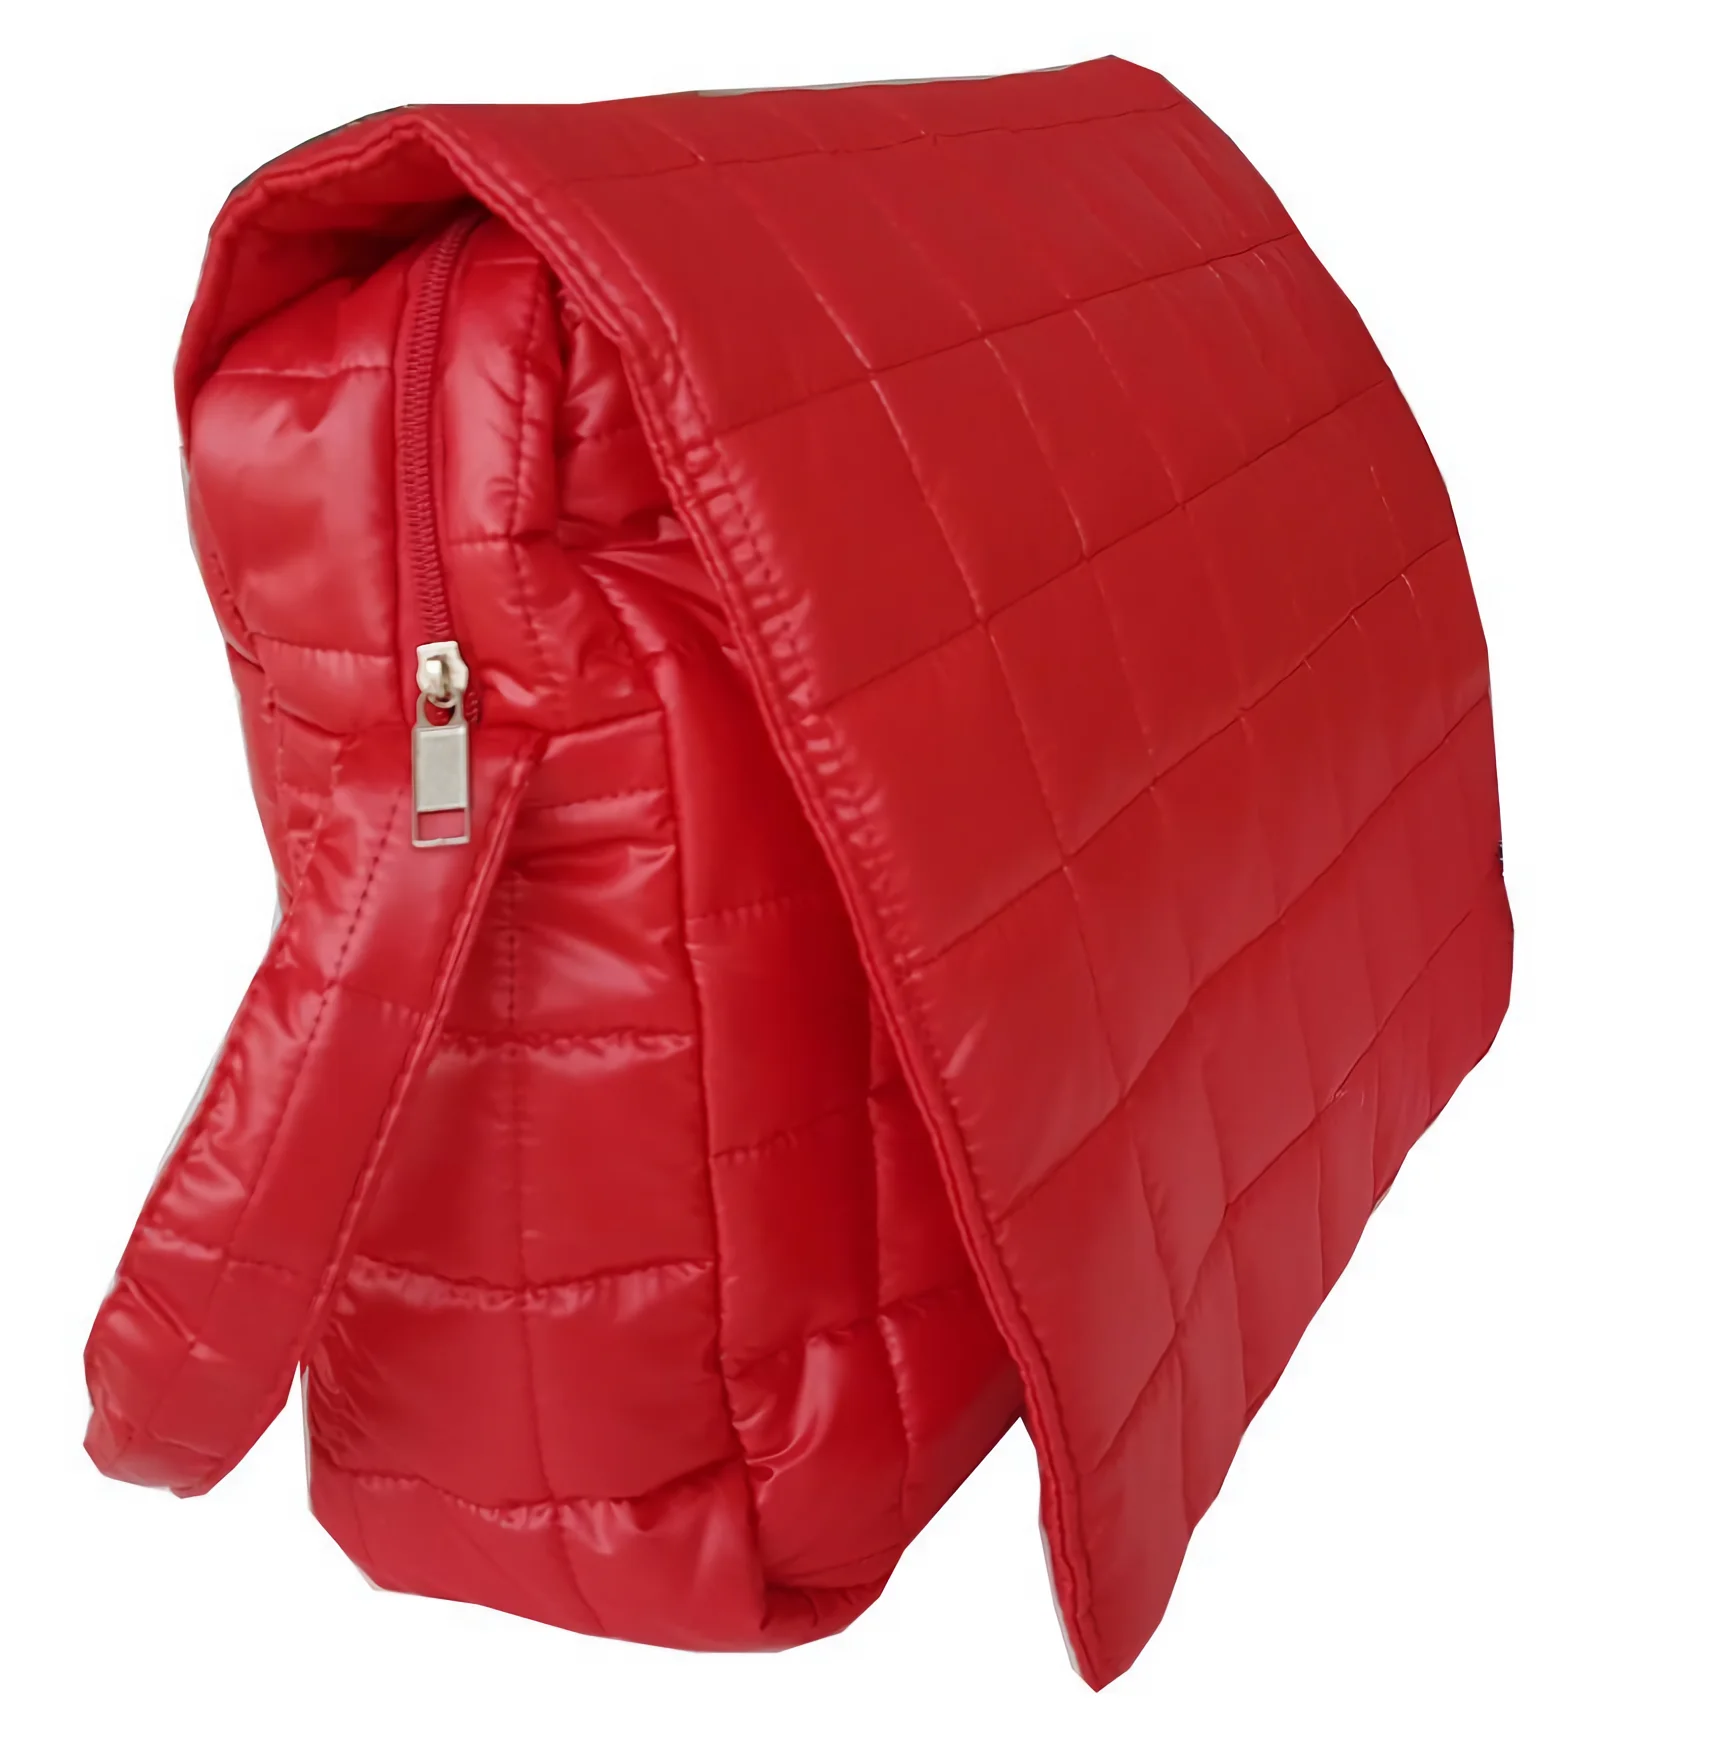 Роскошная сумка для ухода за ребенком, красно-Кремово-черные цвета, сумка для мамы, роскошная сумка для ухода за ребенком, качественная, прак... от AliExpress RU&CIS NEW